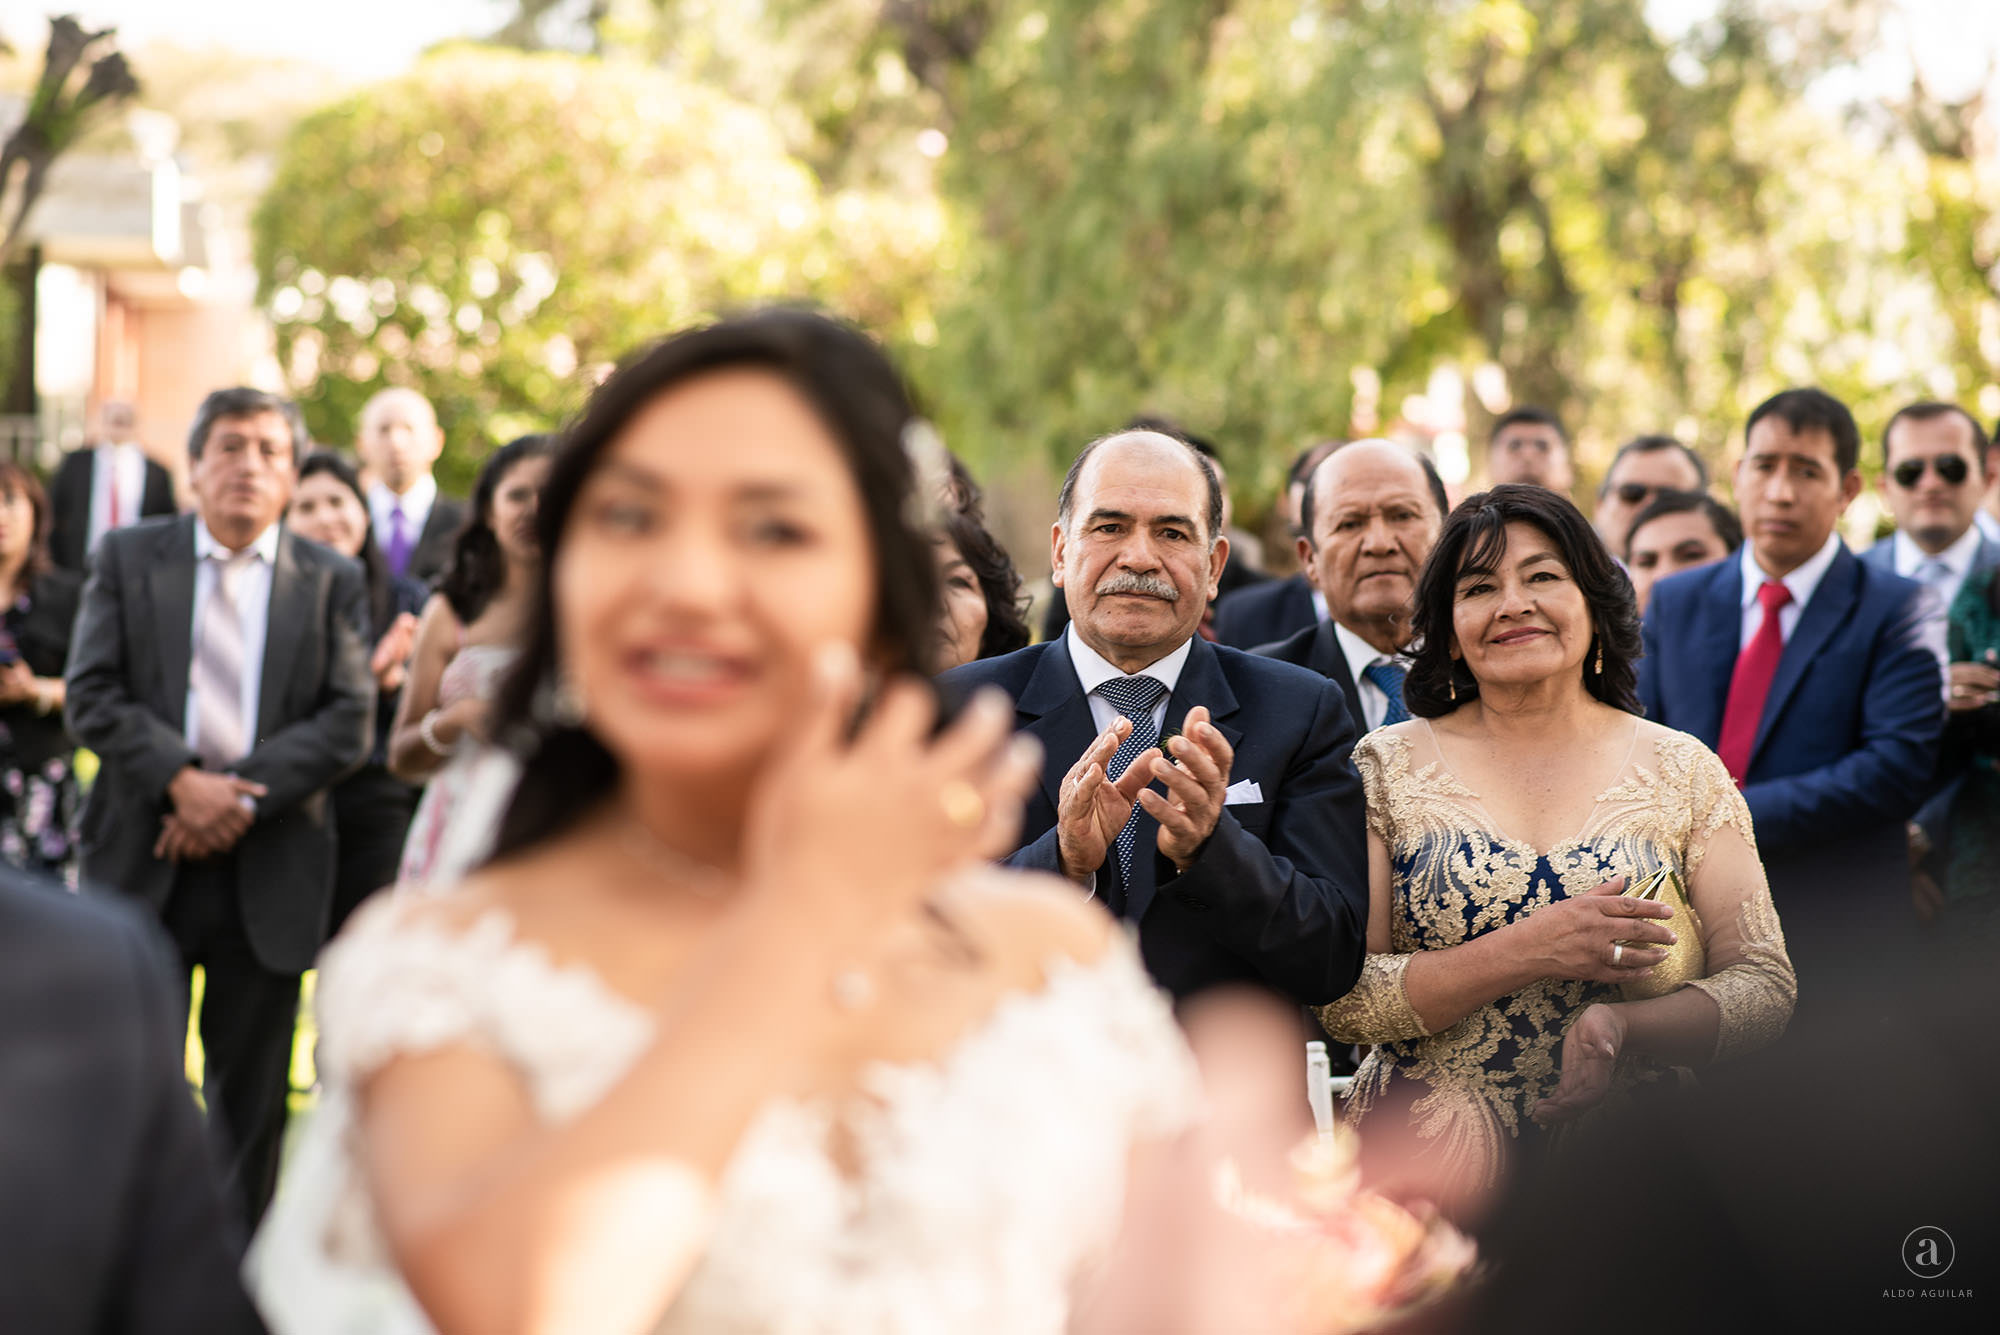 Claudia Roberto aldo aguilar fotografo fotografia boda sesion novios retrato novia novio arequipa peru 50 lafont civil